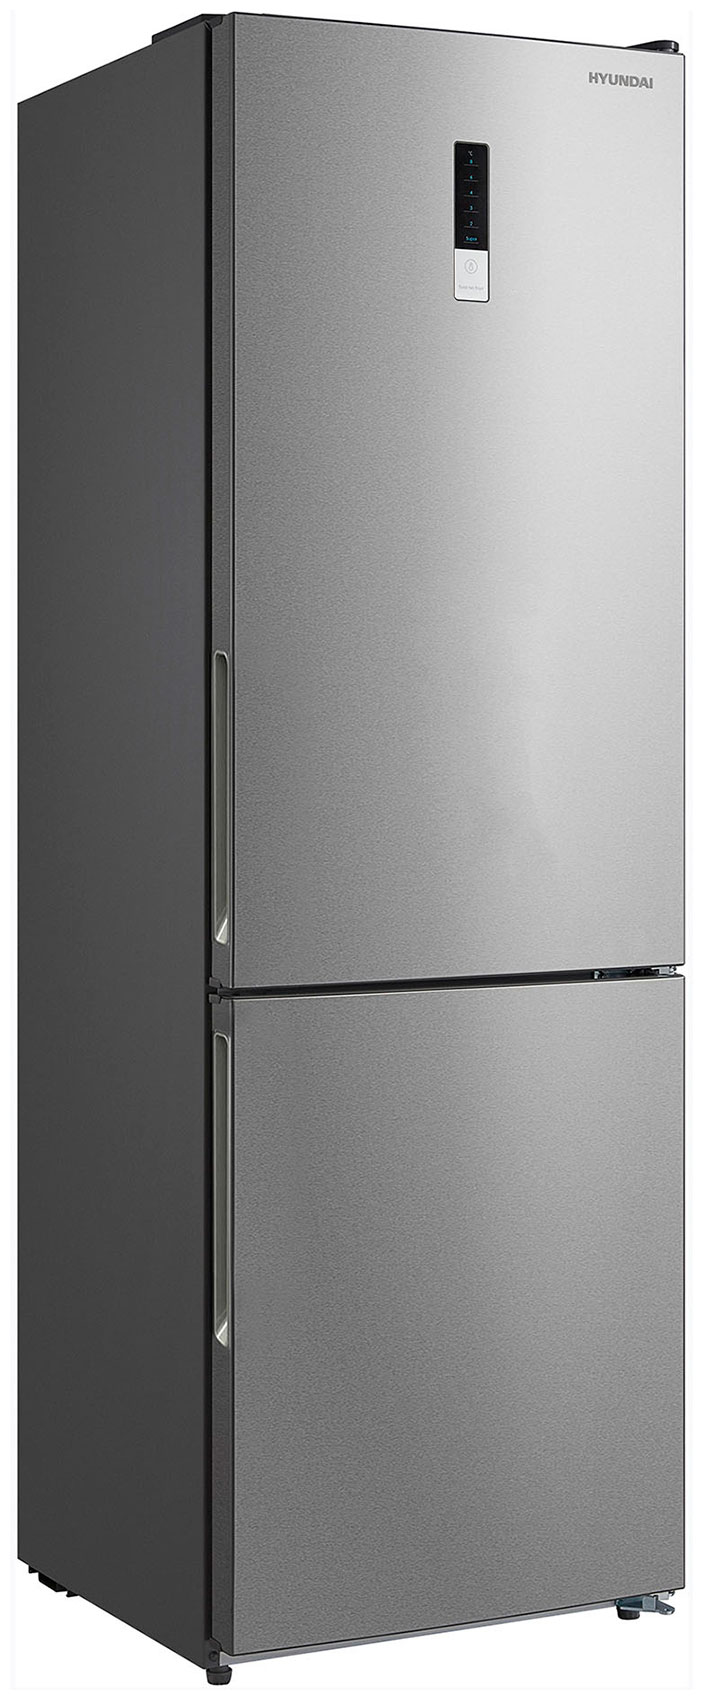 Двухкамерный холодильник Hyundai CC3095FIX нержавеющая сталь двухкамерный холодильник hyundai cc3093fix нержавеющая сталь